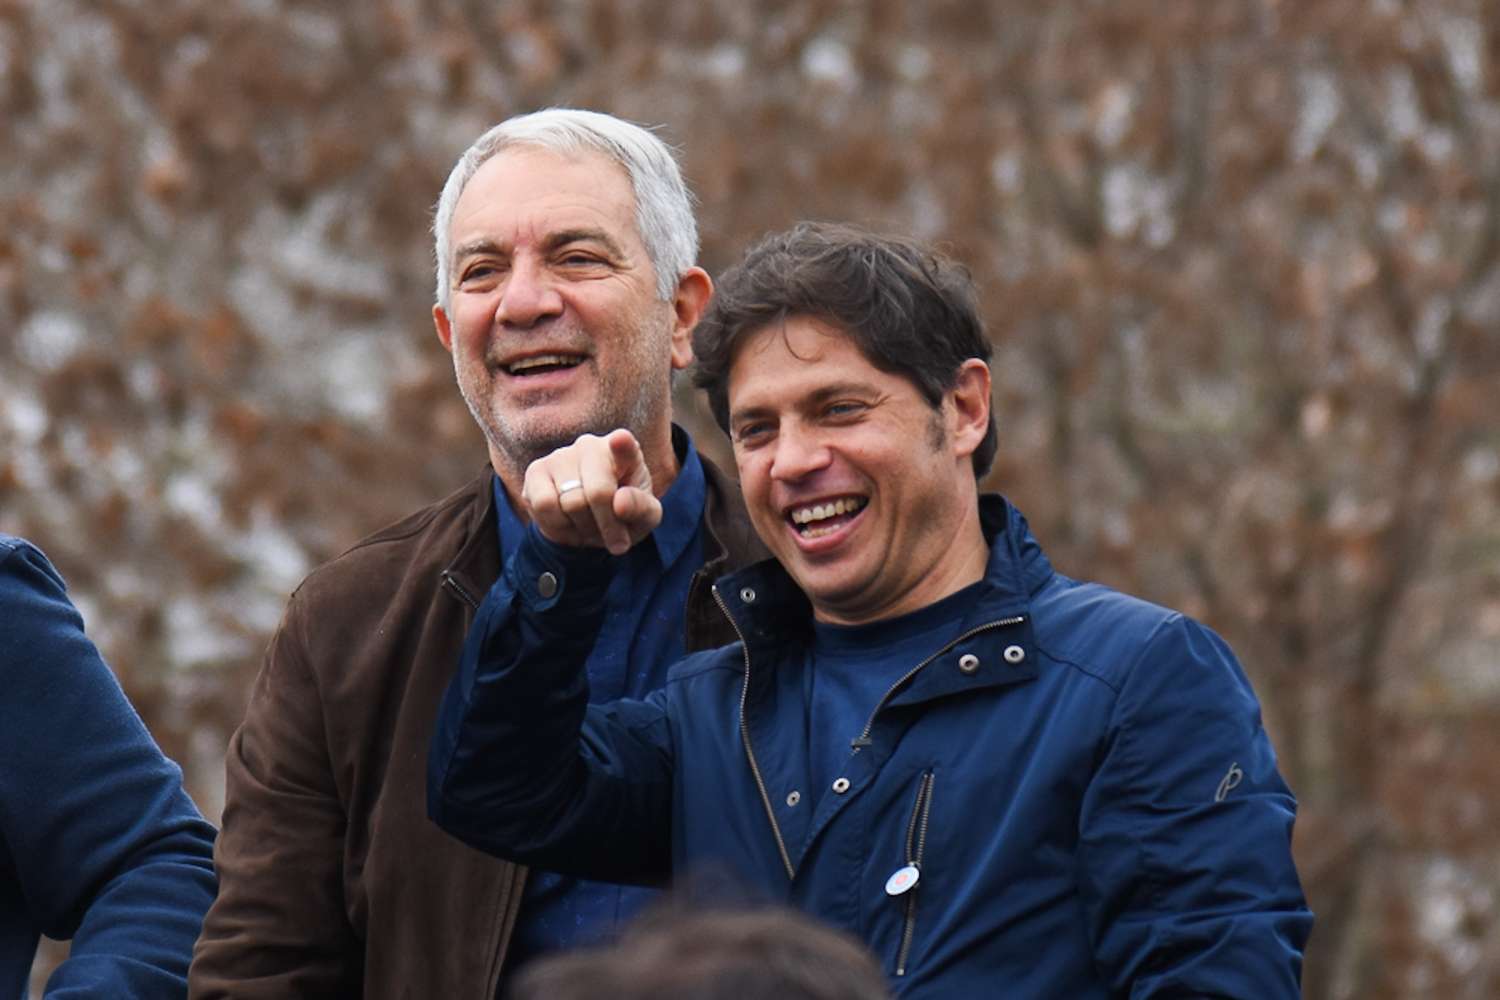 Kicillof encabeza el "Encuentro por la Patria", un acto de respaldo a Massa en La Plata junto a Alak, Secco y Cagliardi